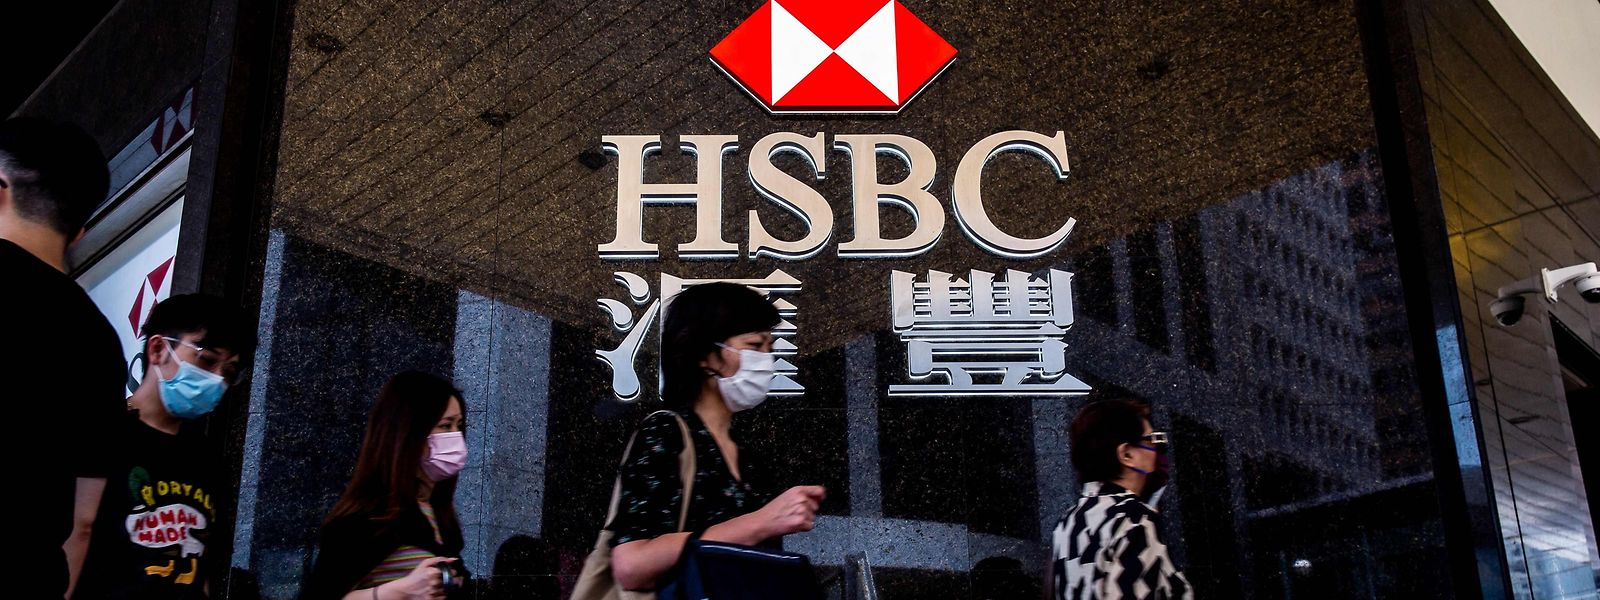 Avec 174 millions d'euros, HSBC a écopé de l'amende la plus élevée